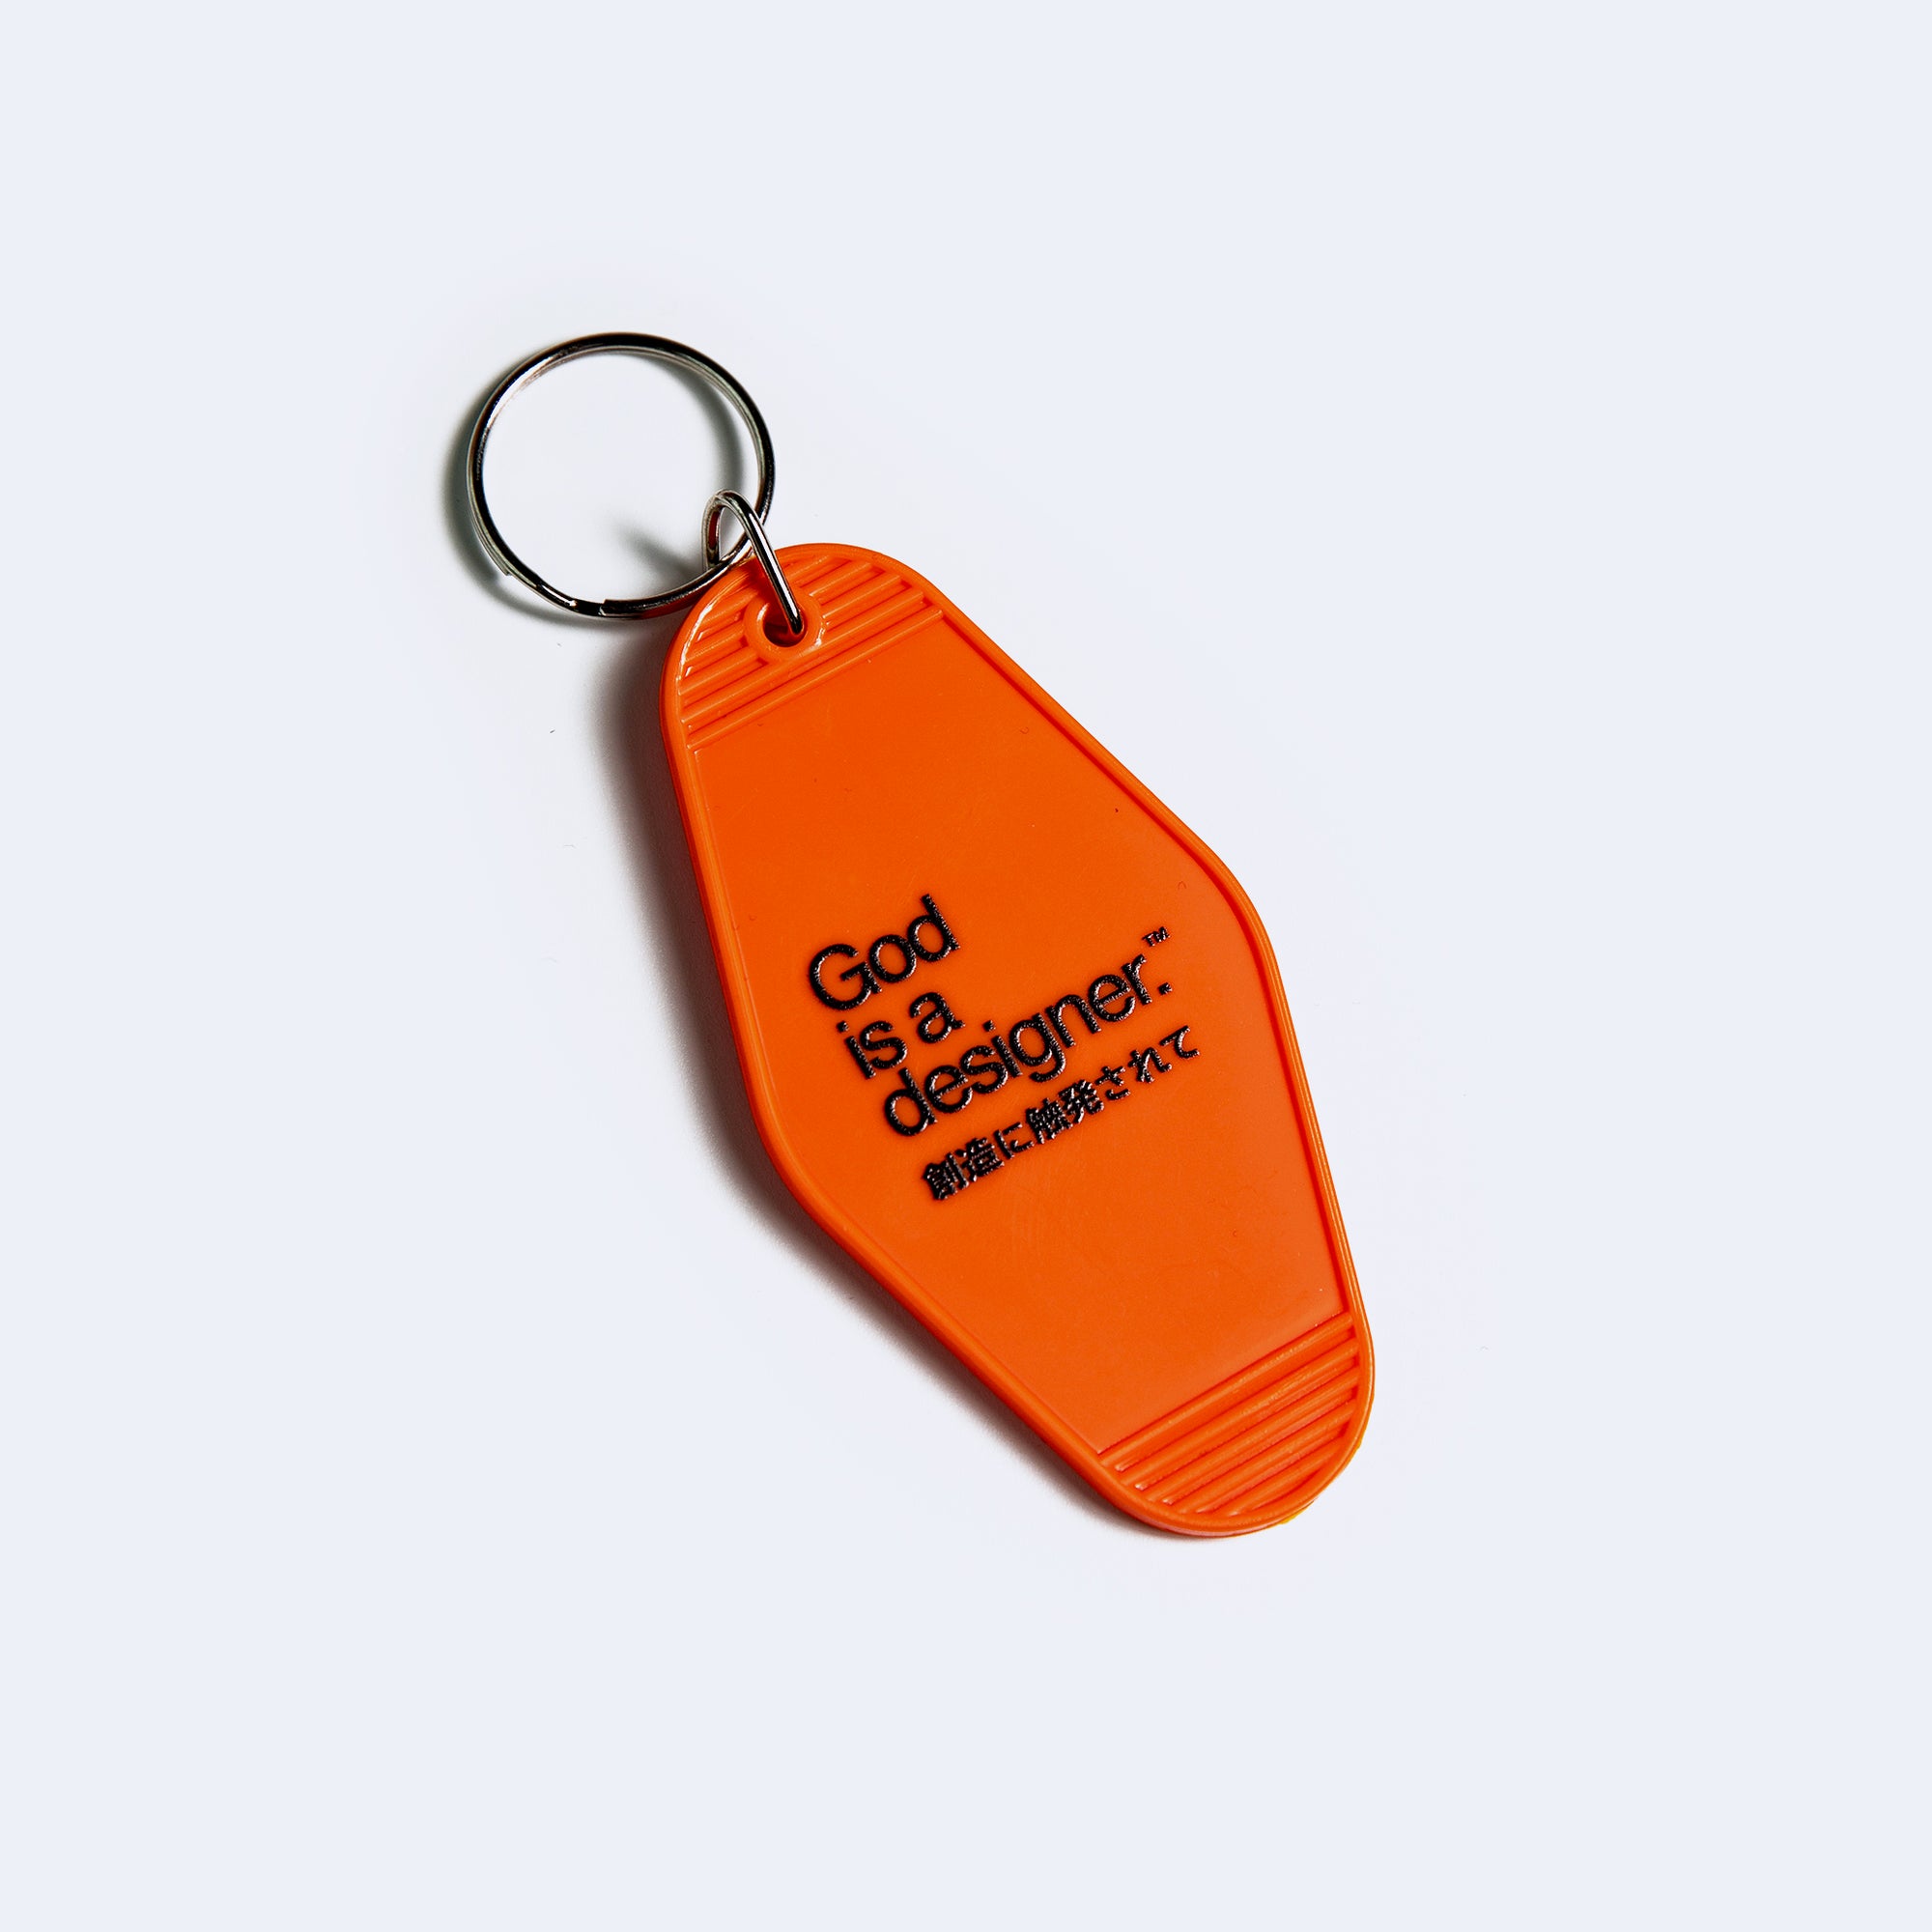 DoDA™ Key Access Tag [Orange] - God is a designer.®